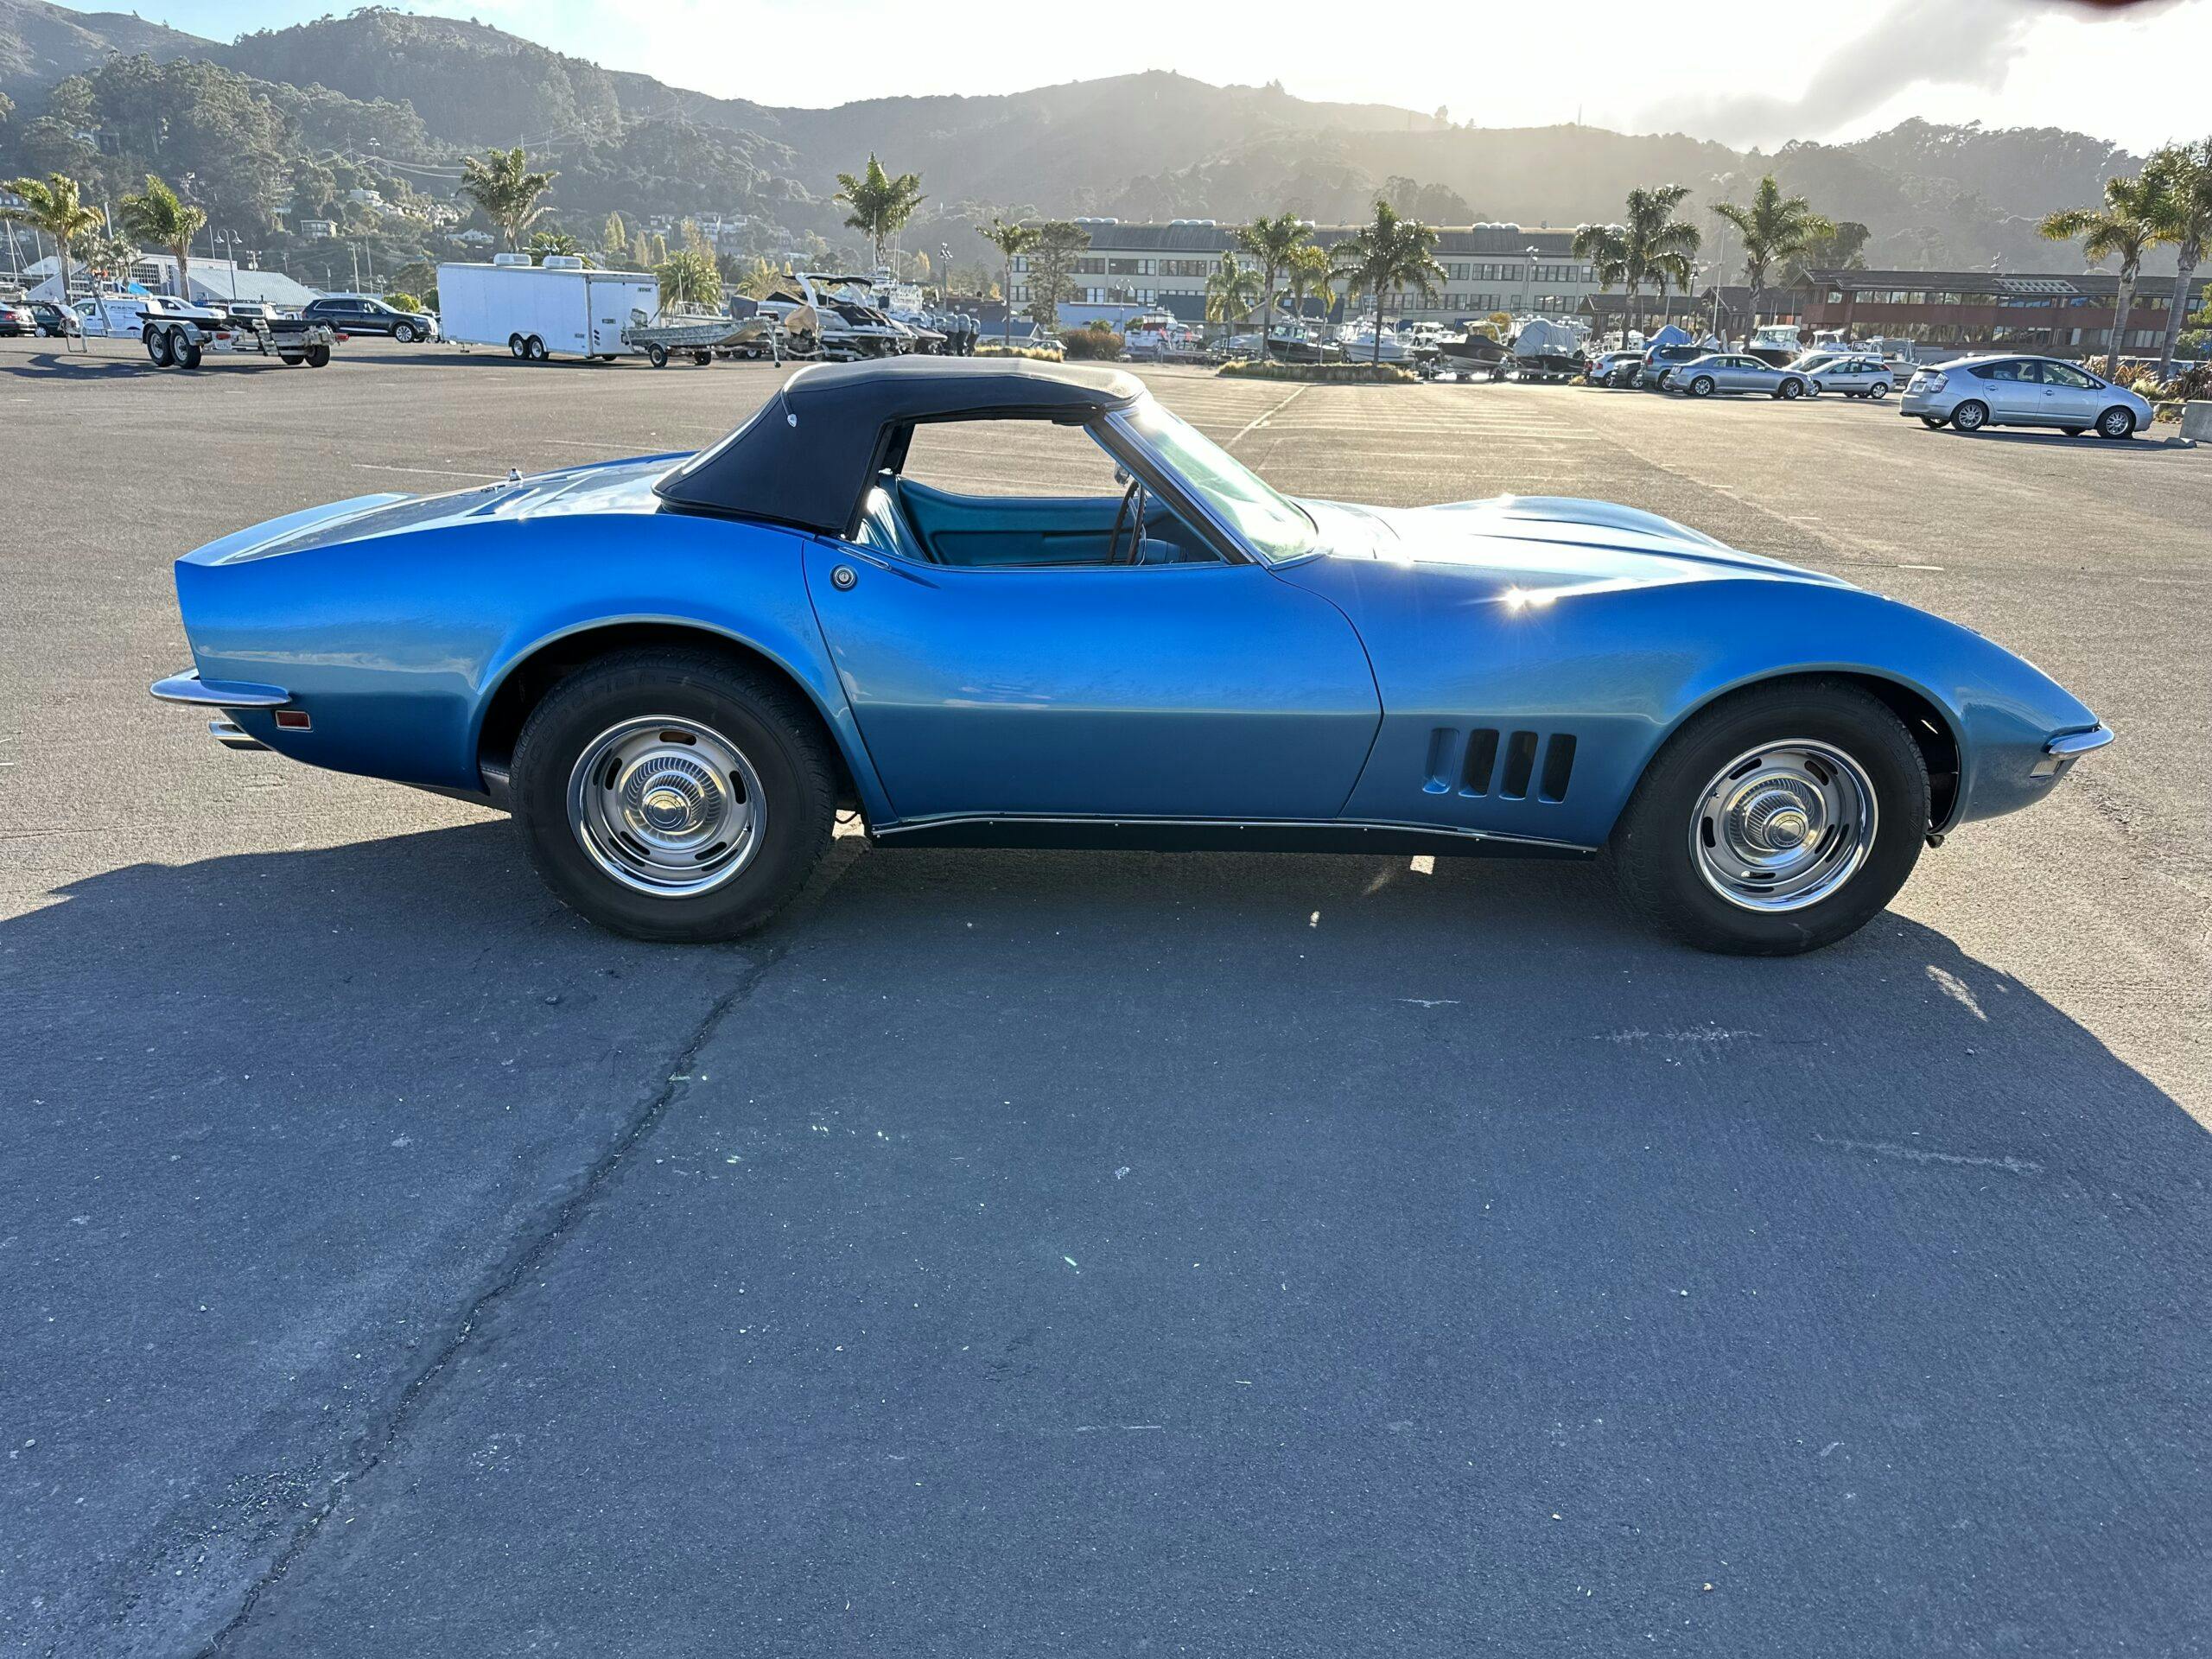 1968 Corvette C2 Stingray side